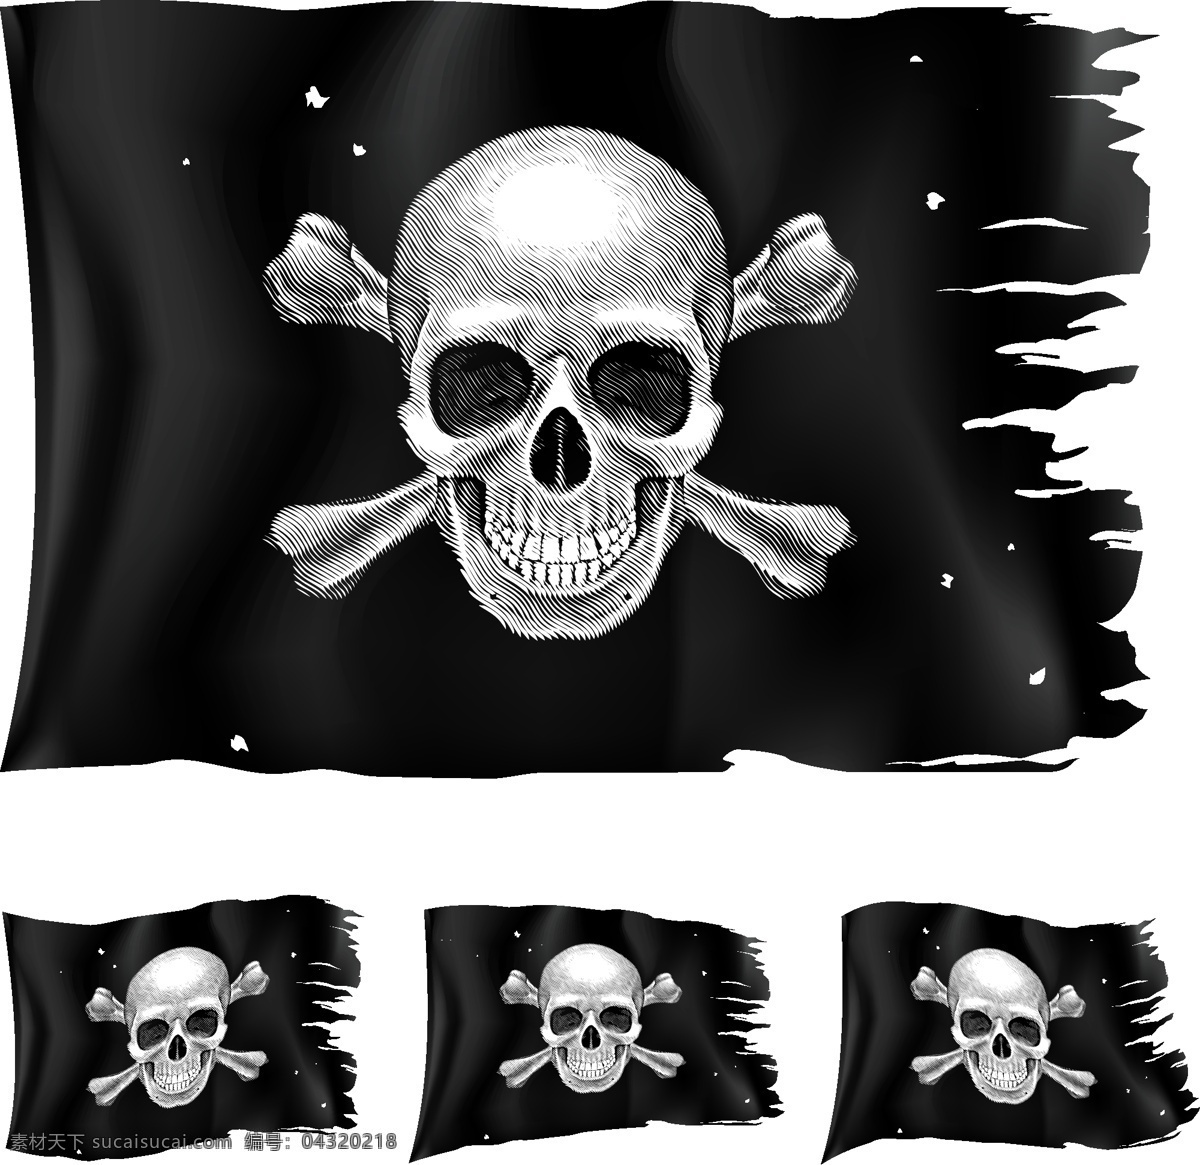 海盗骷髅旗 海盗 骷髅旗 旗子 生活百科 矢量素材 黑色